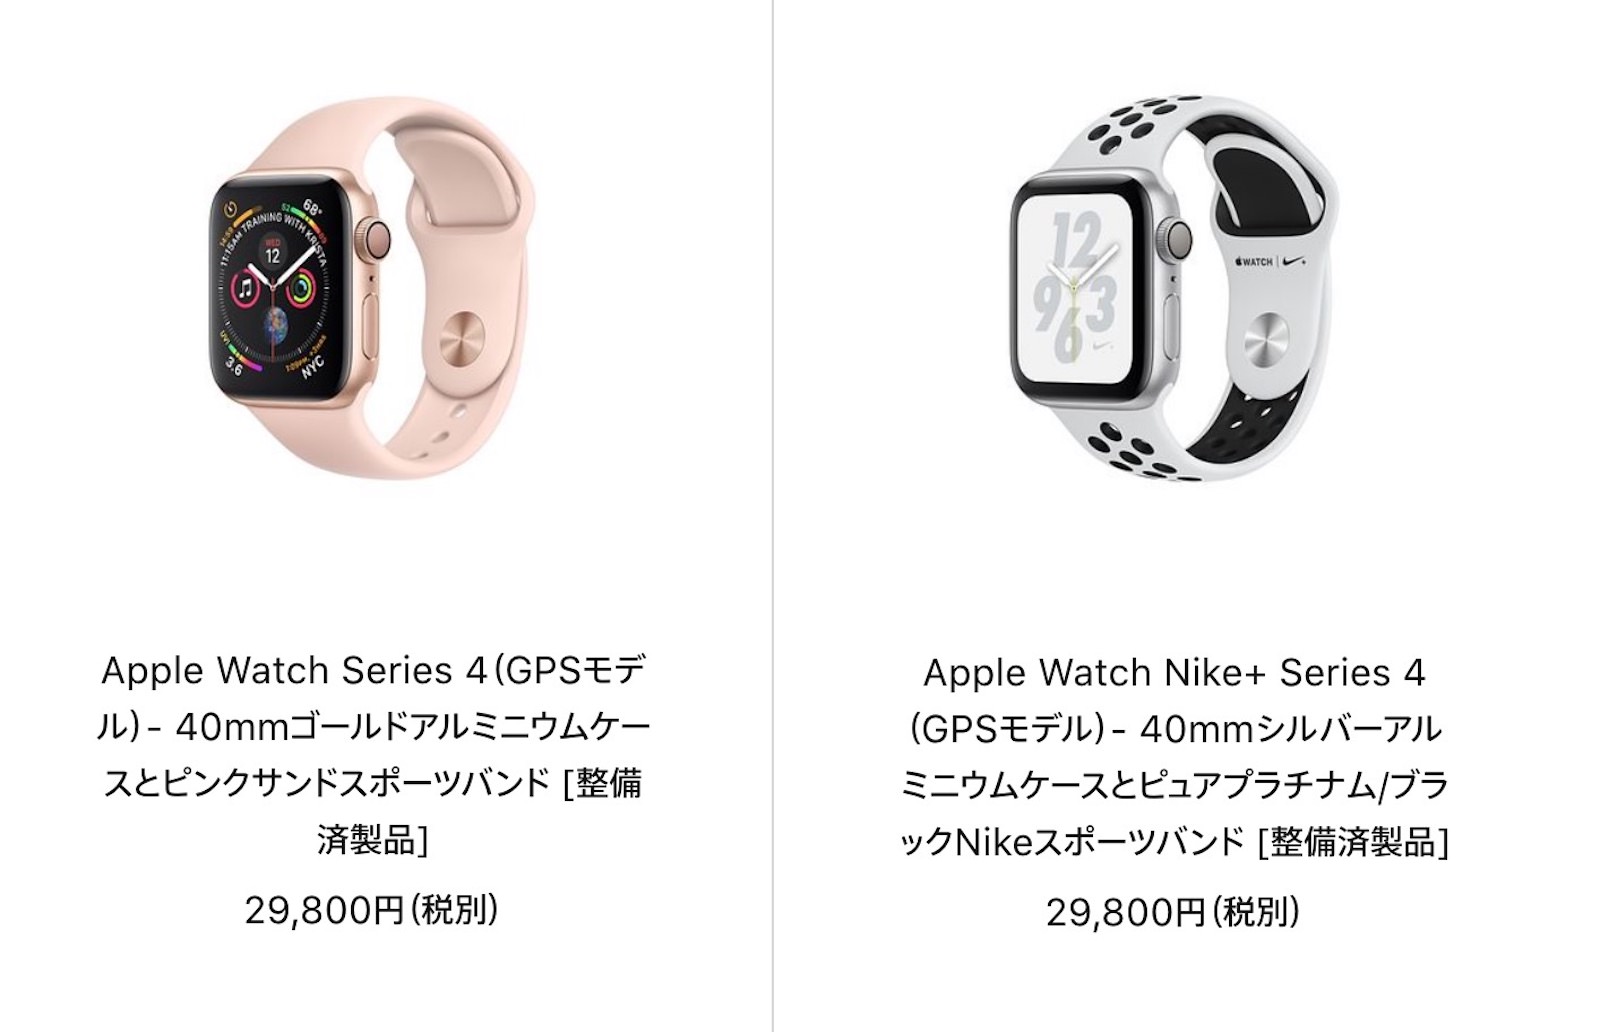 Apple watch series 4 refurbished